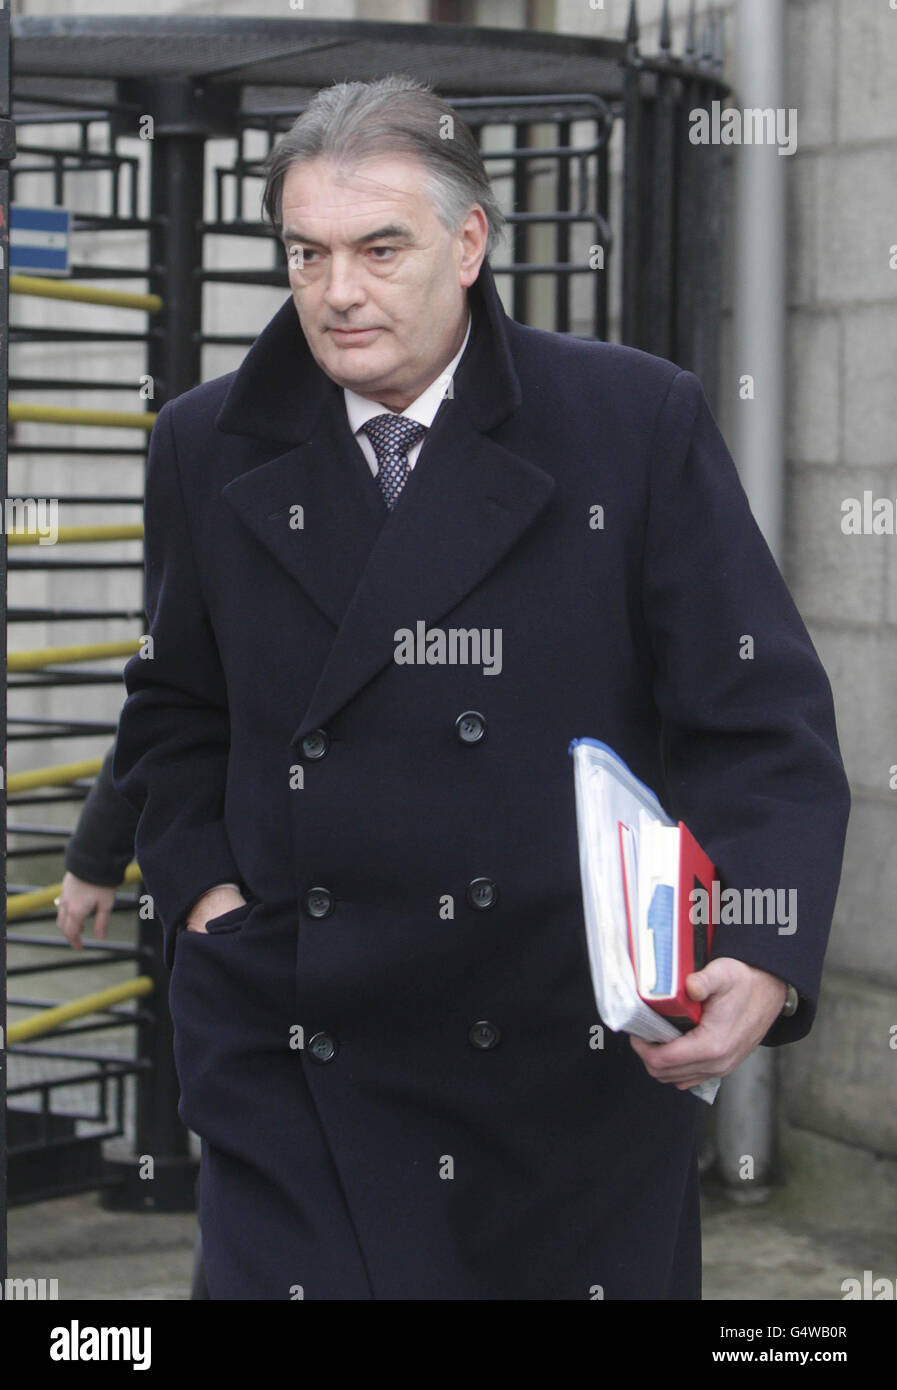 Ian Bailey quitte la Cour suprême de Dublin, où il est extradé vers la France pour s'être interrogé sur le meurtre de la cinéaste Sophie Toscan du Plantier. Banque D'Images